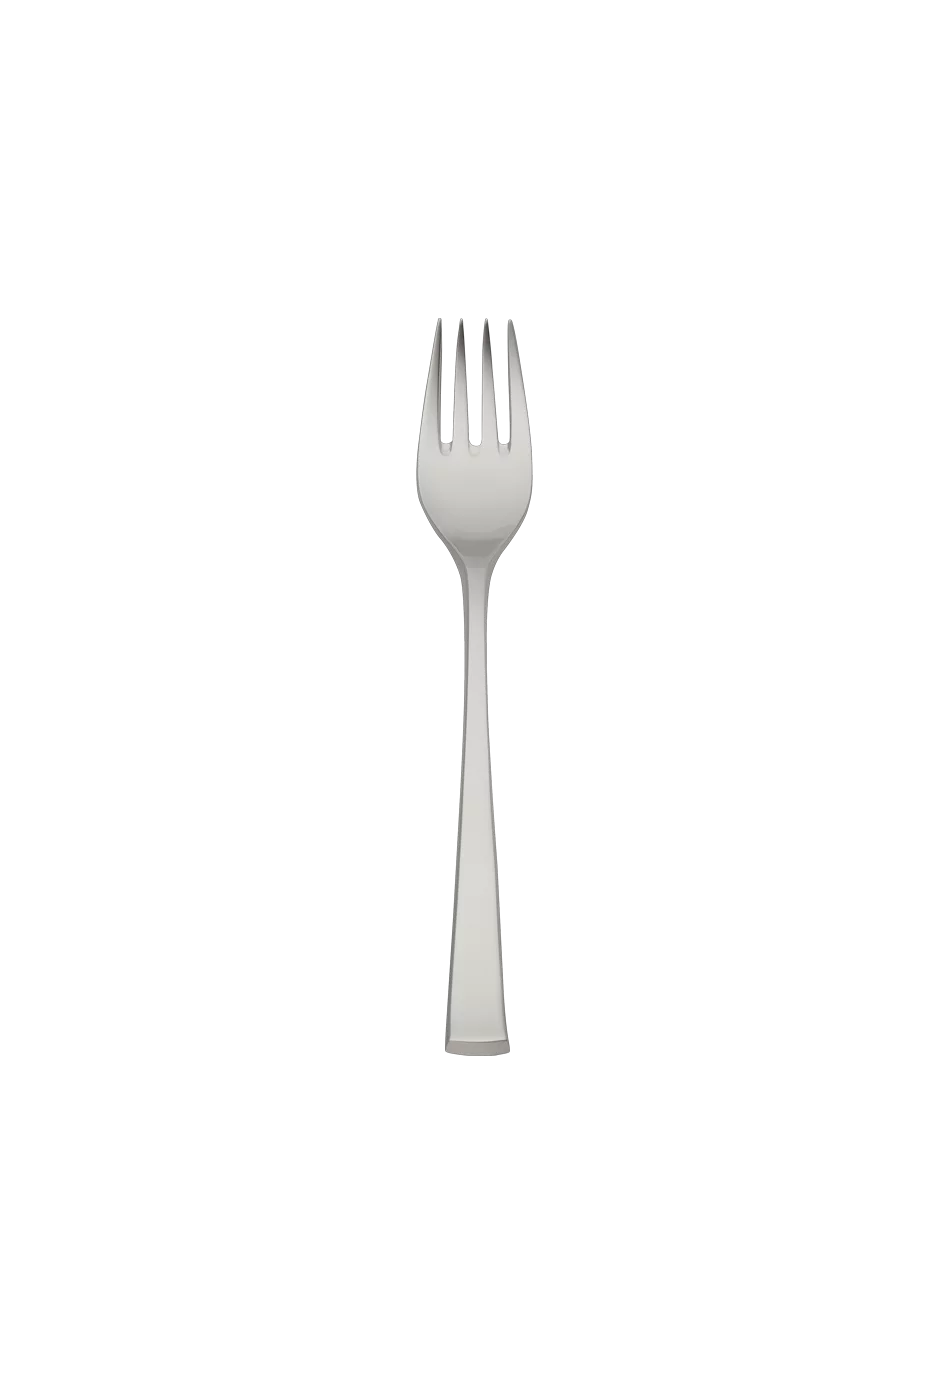 York Children's Fork (18/8 stainless steel)